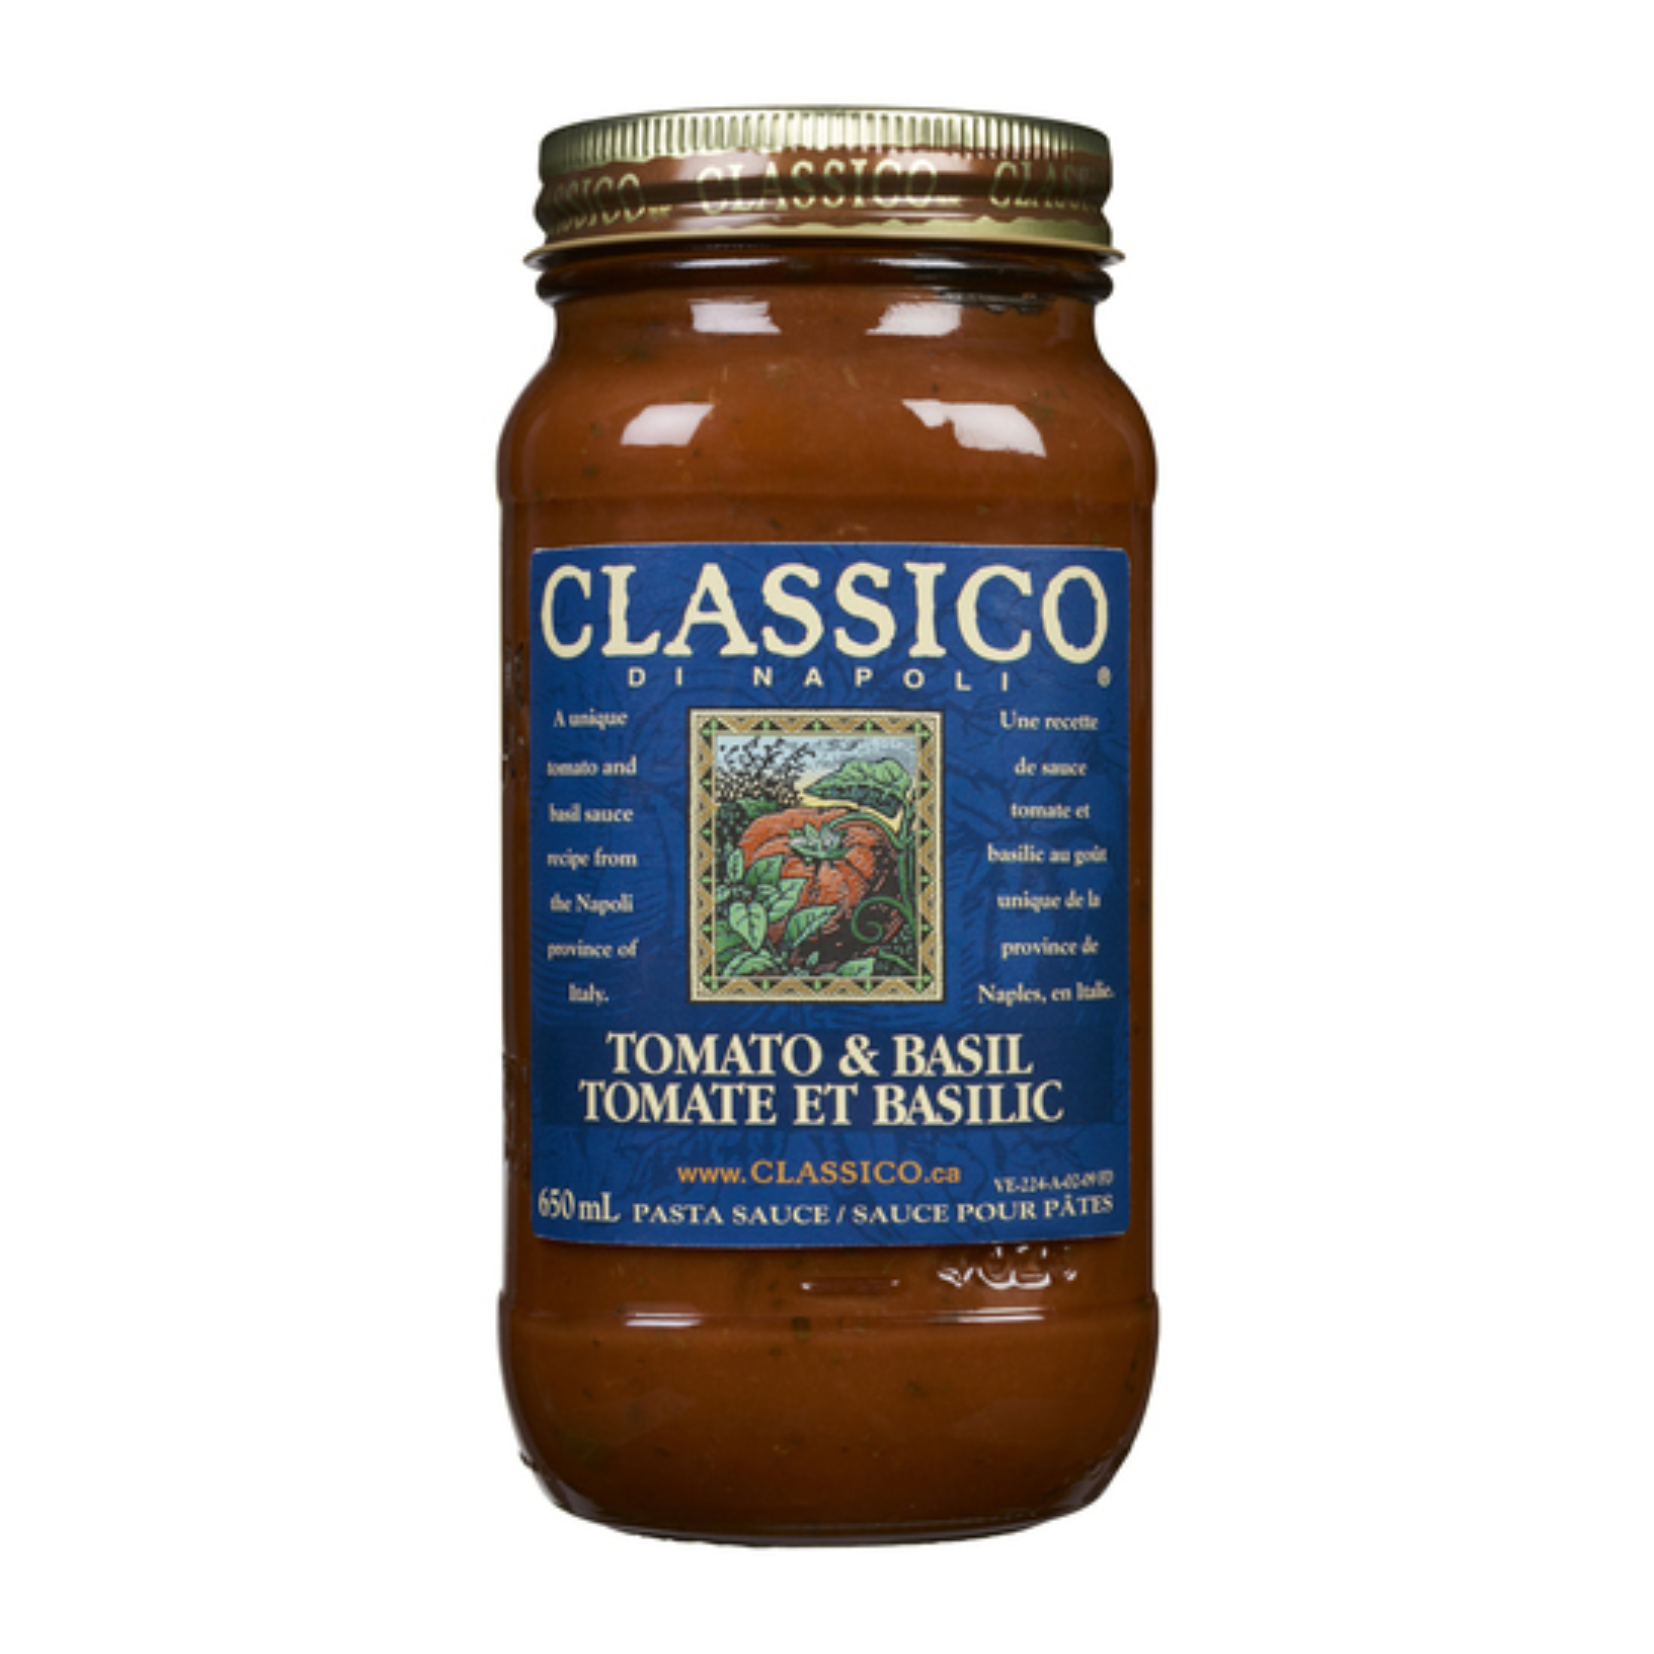 Classico Di Napoli Tomato & Basil Pasta Sauce 650ml